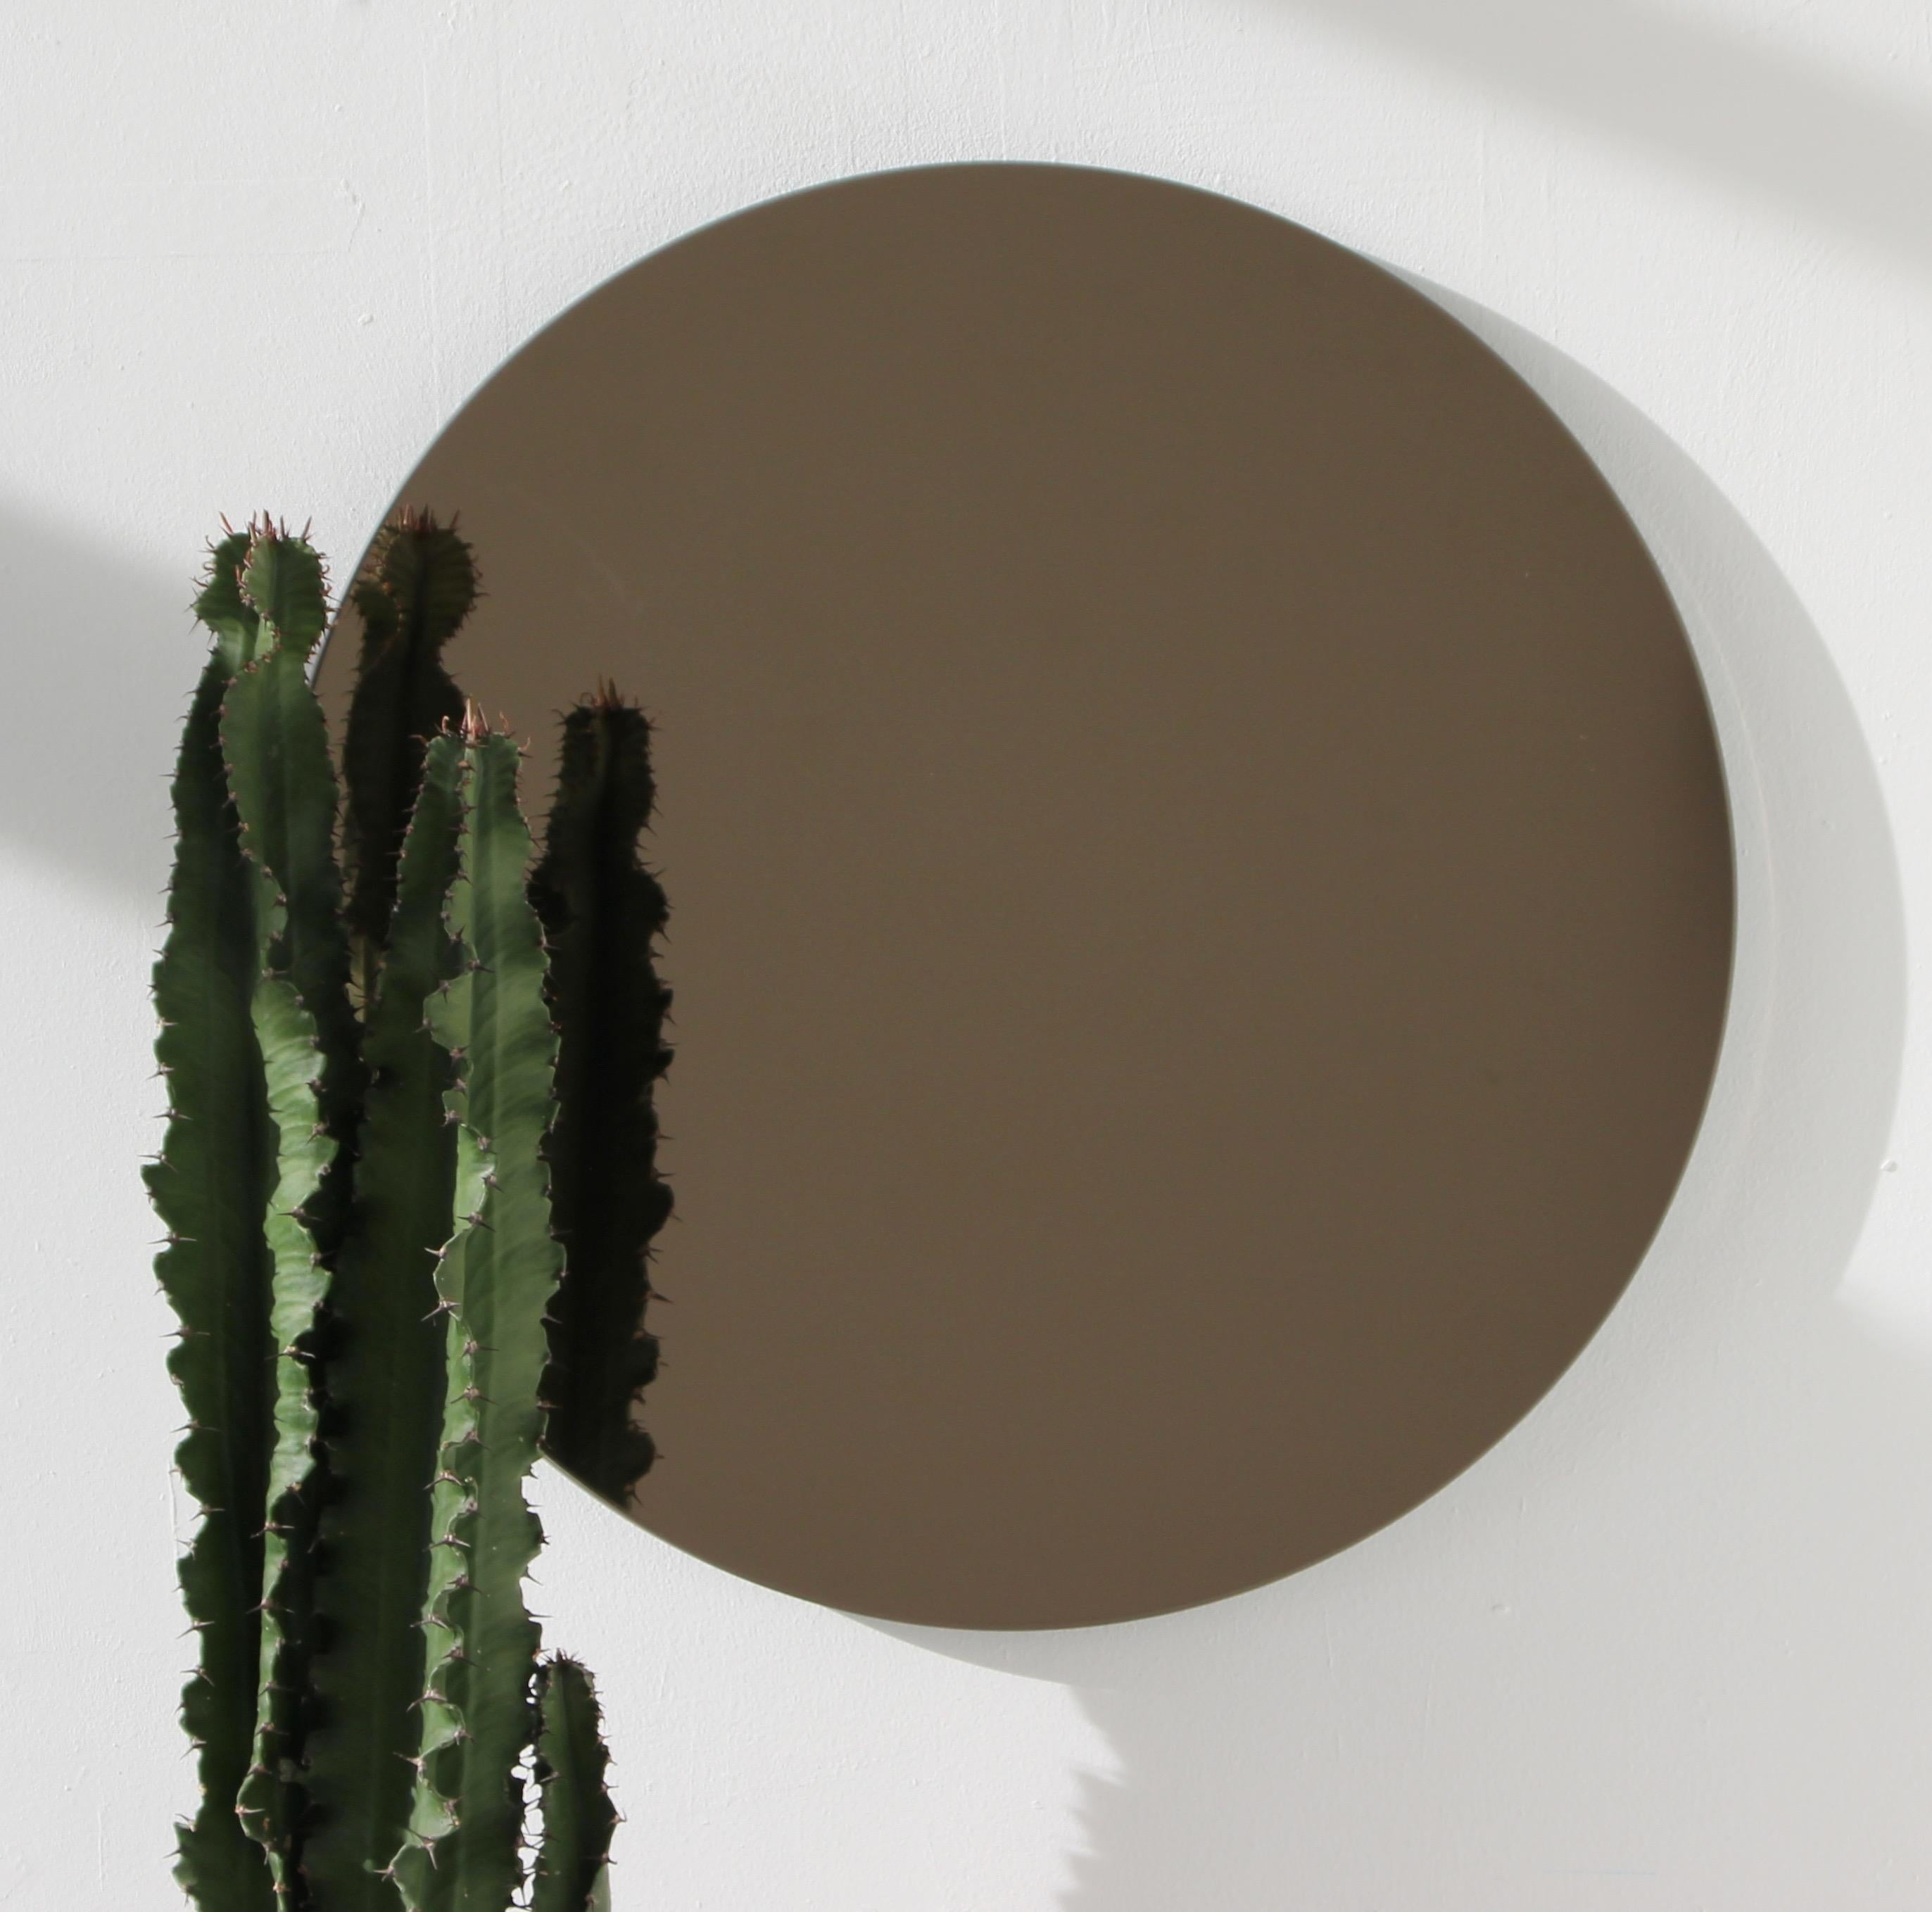 British Orbis Bronze Tinted Round Minimalist Frameless Mirror Floating Effect, Regular For Sale